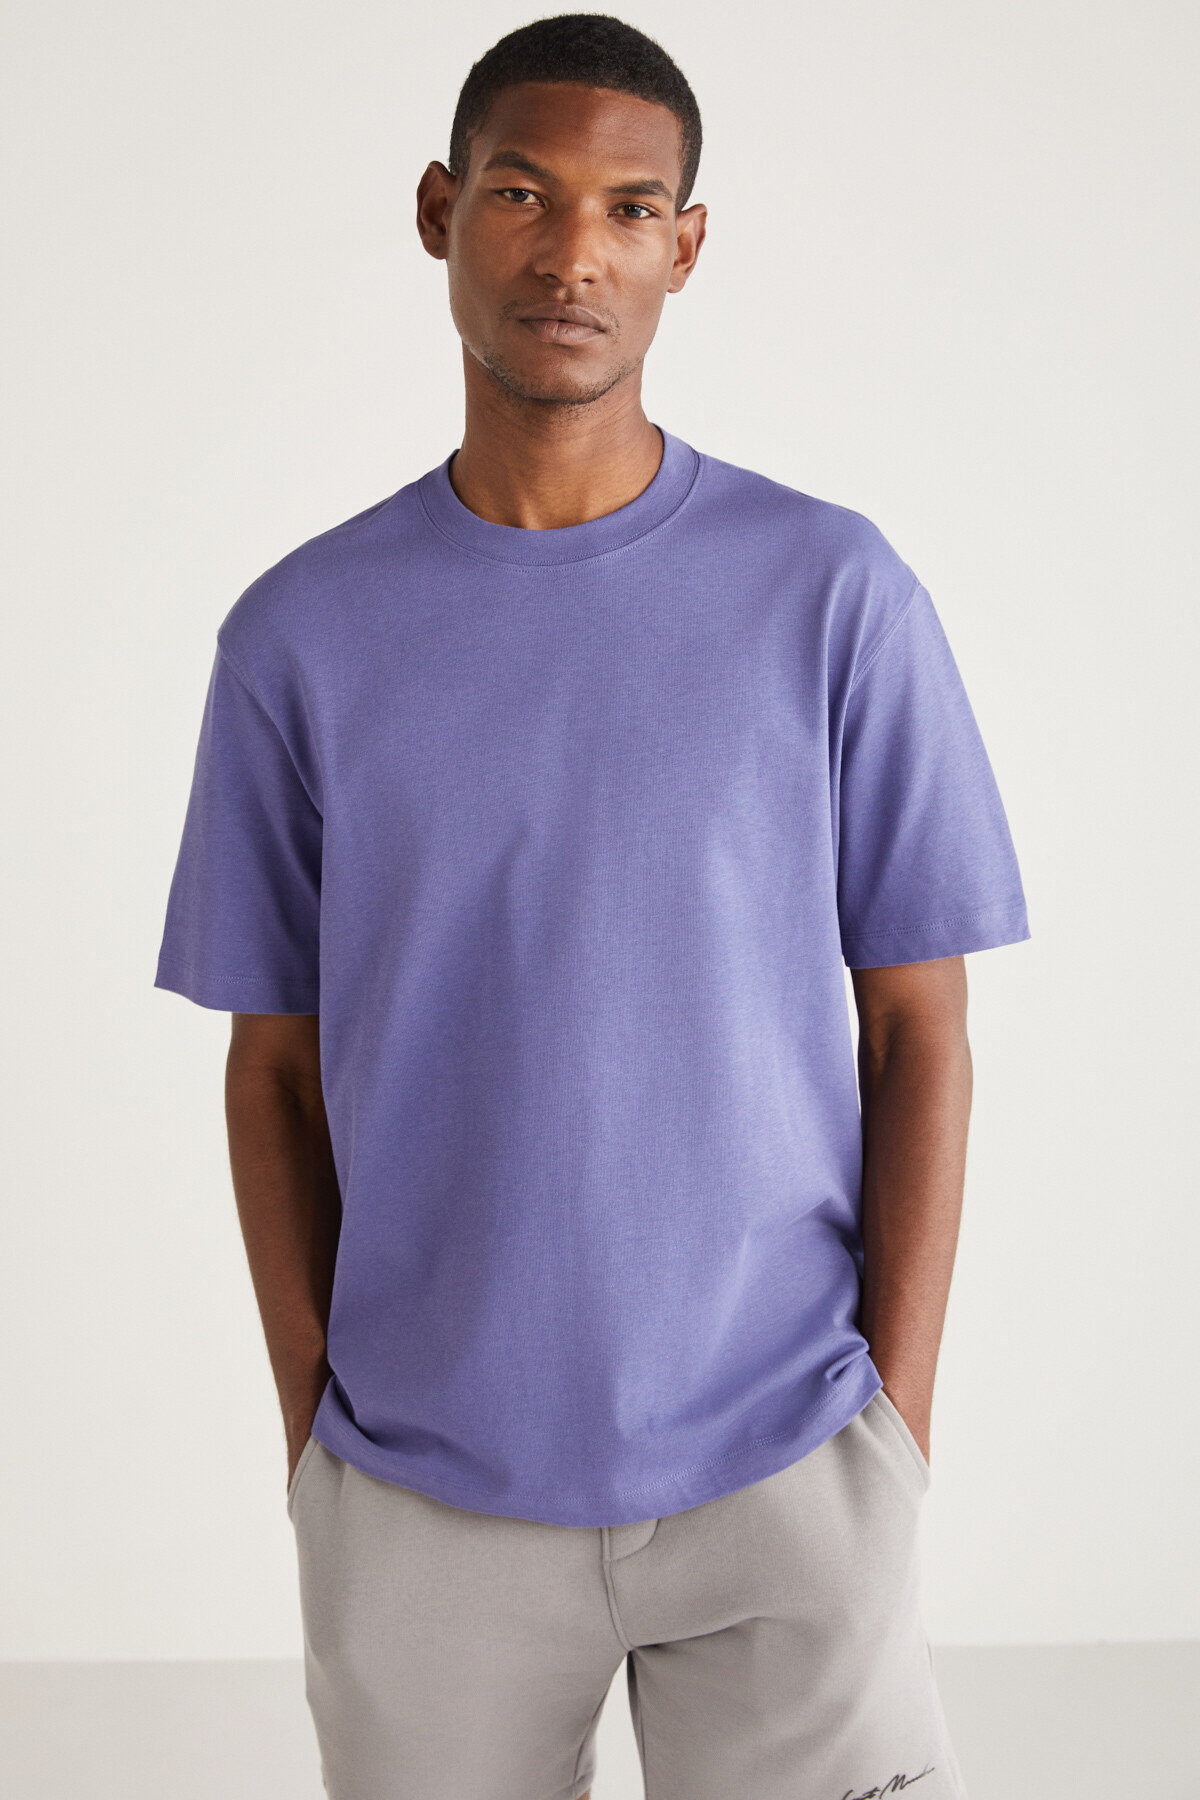 Levně GRIMELANGE Curtis Men's Comfort Fit Thick Textured Recycle 100% Cotton T-shirt